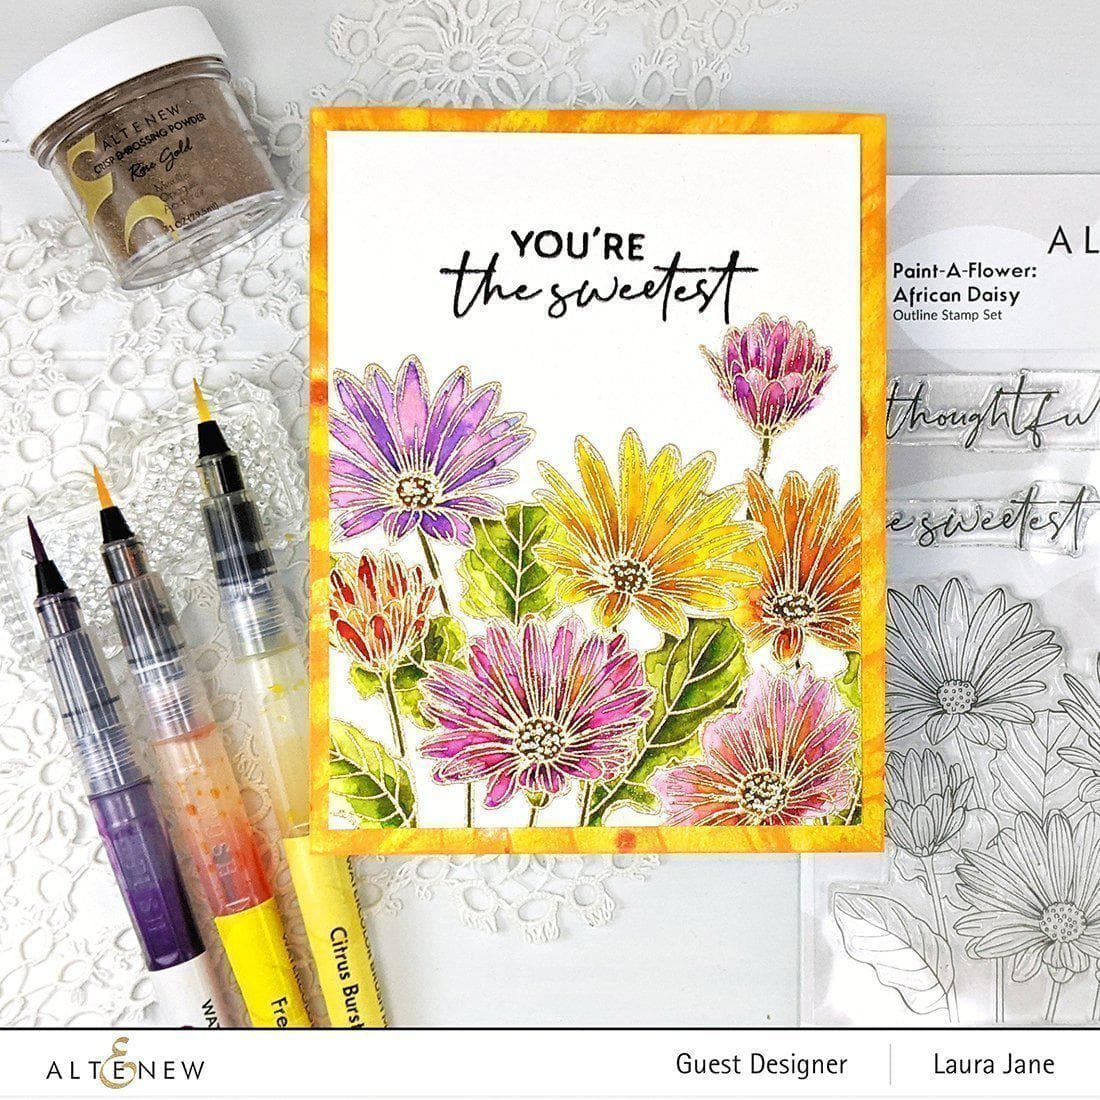 Altenew Stamp & Watercolor Bundle Paint-A-Flower: African Daisy & Artists' Watercolor 24 Pan Set Bundle